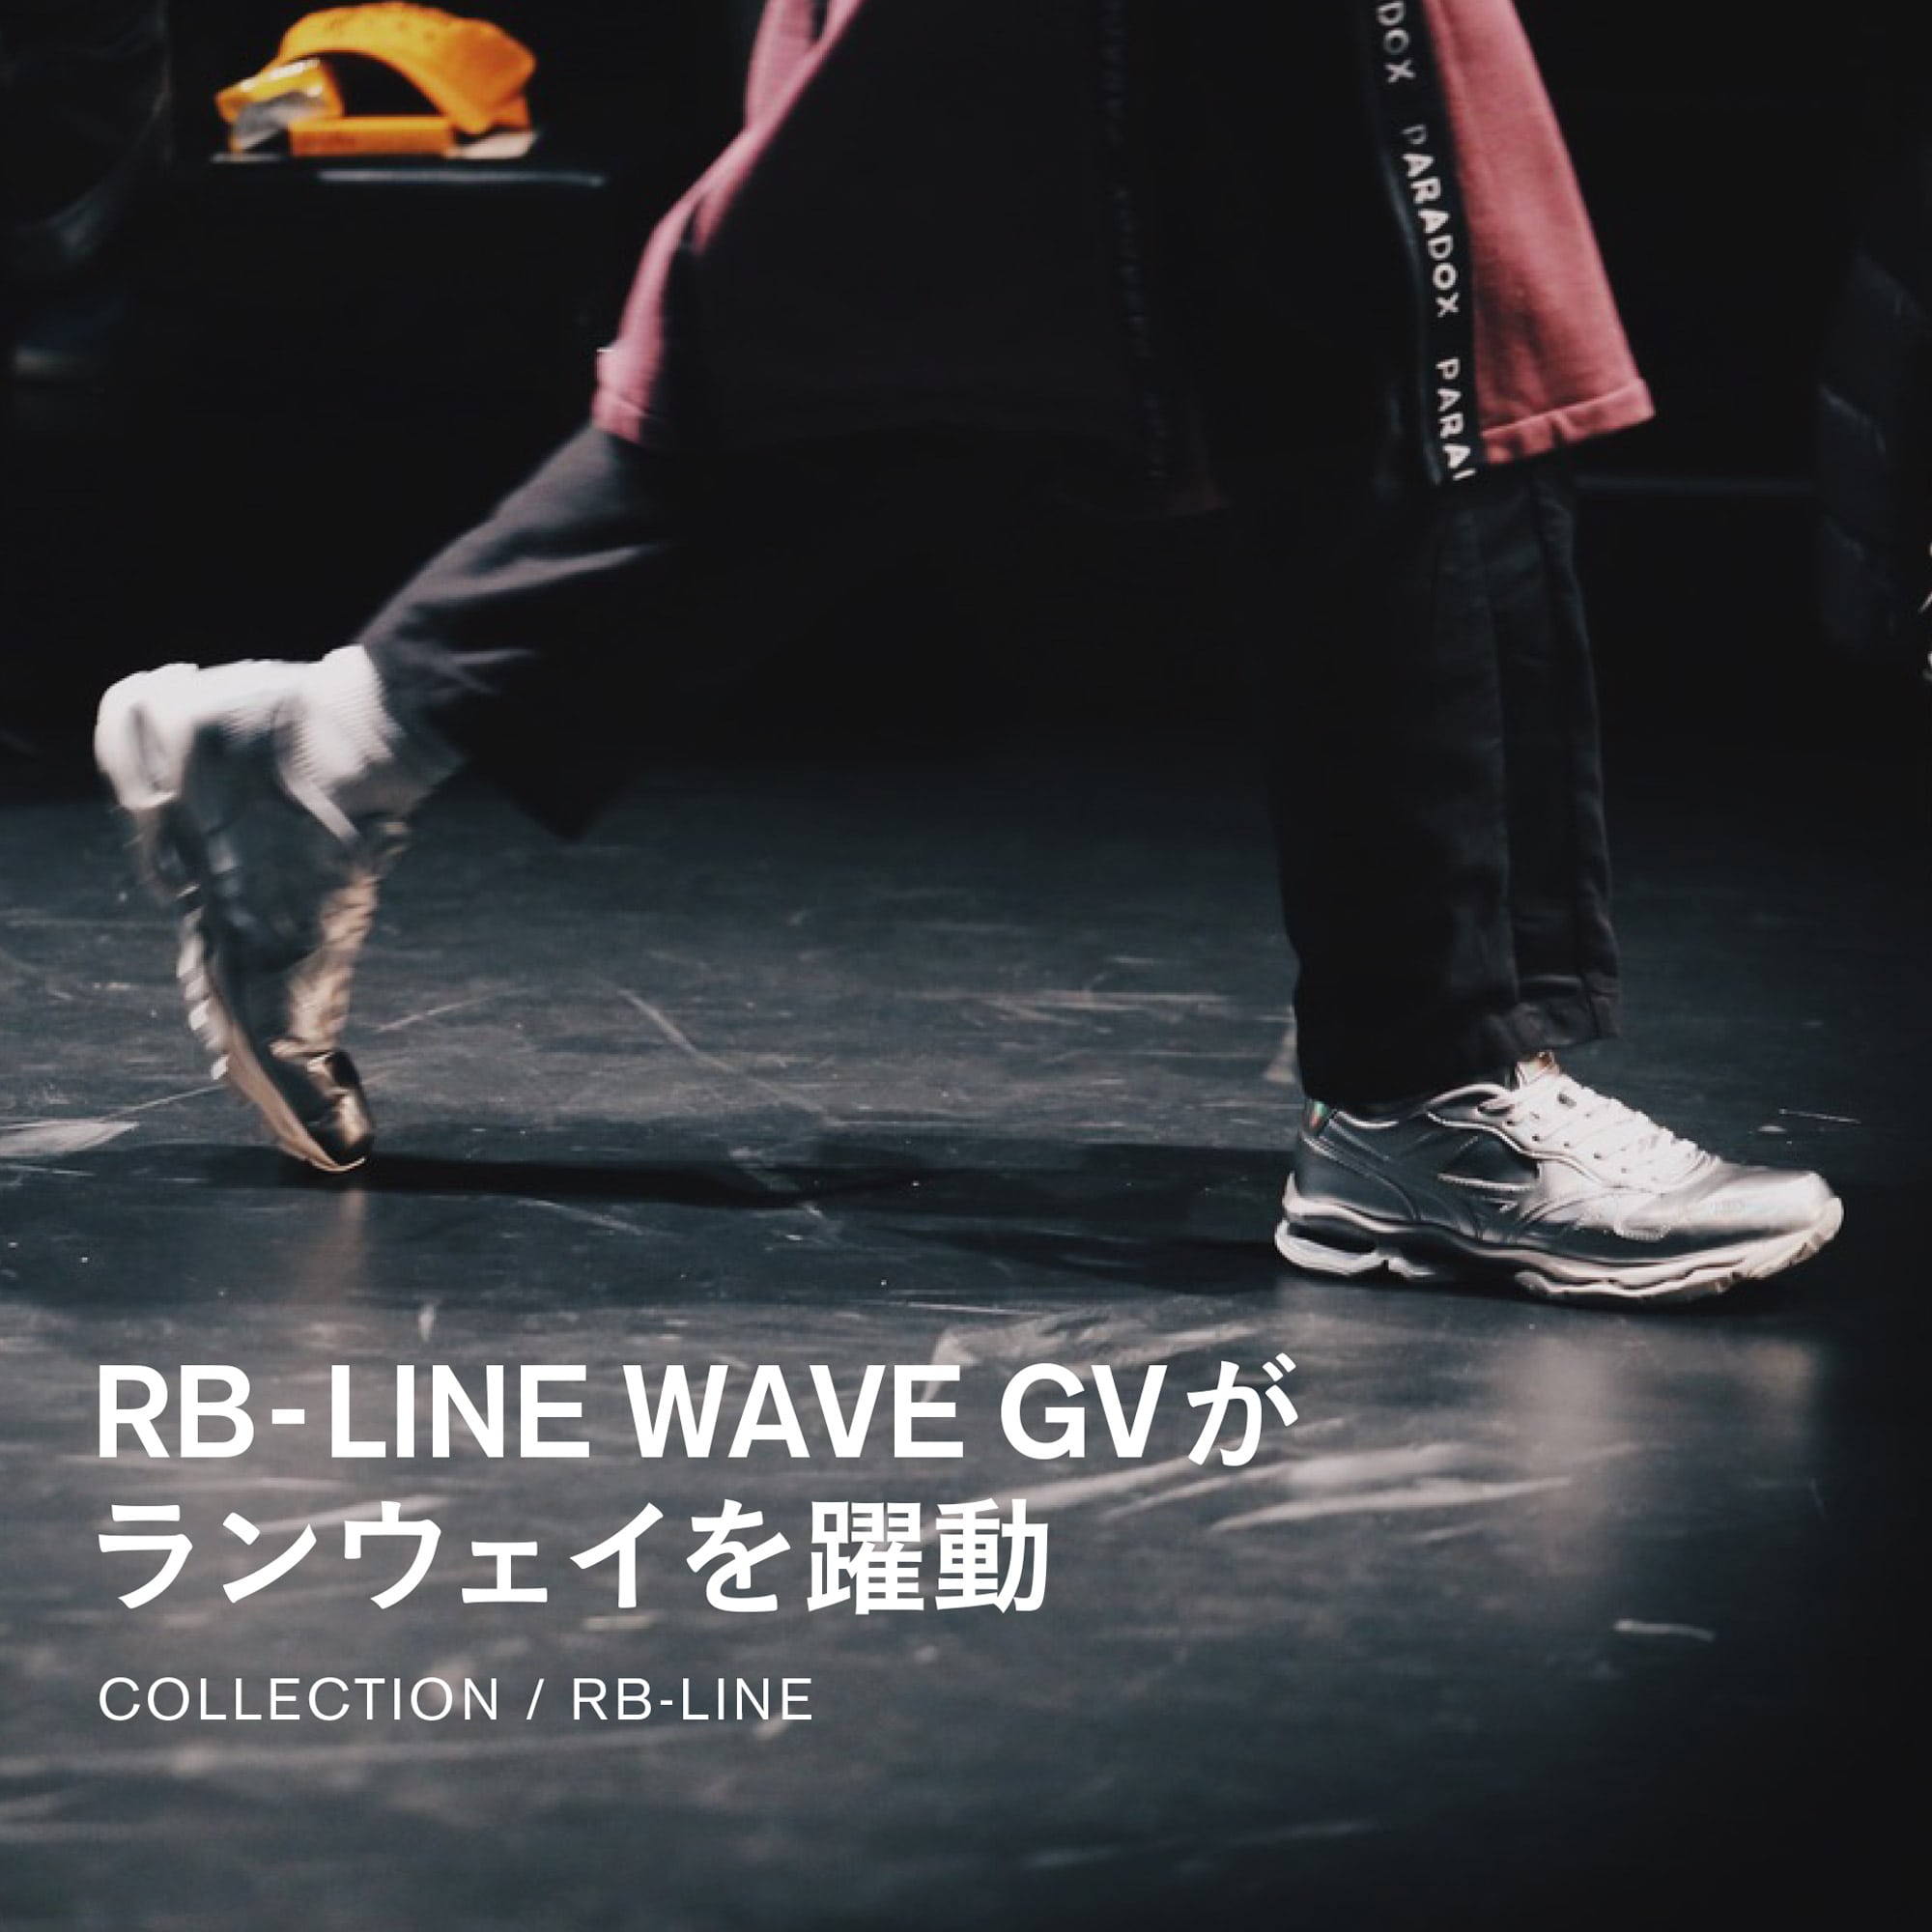 RB-LINE WAVEGVがランウェイを躍動